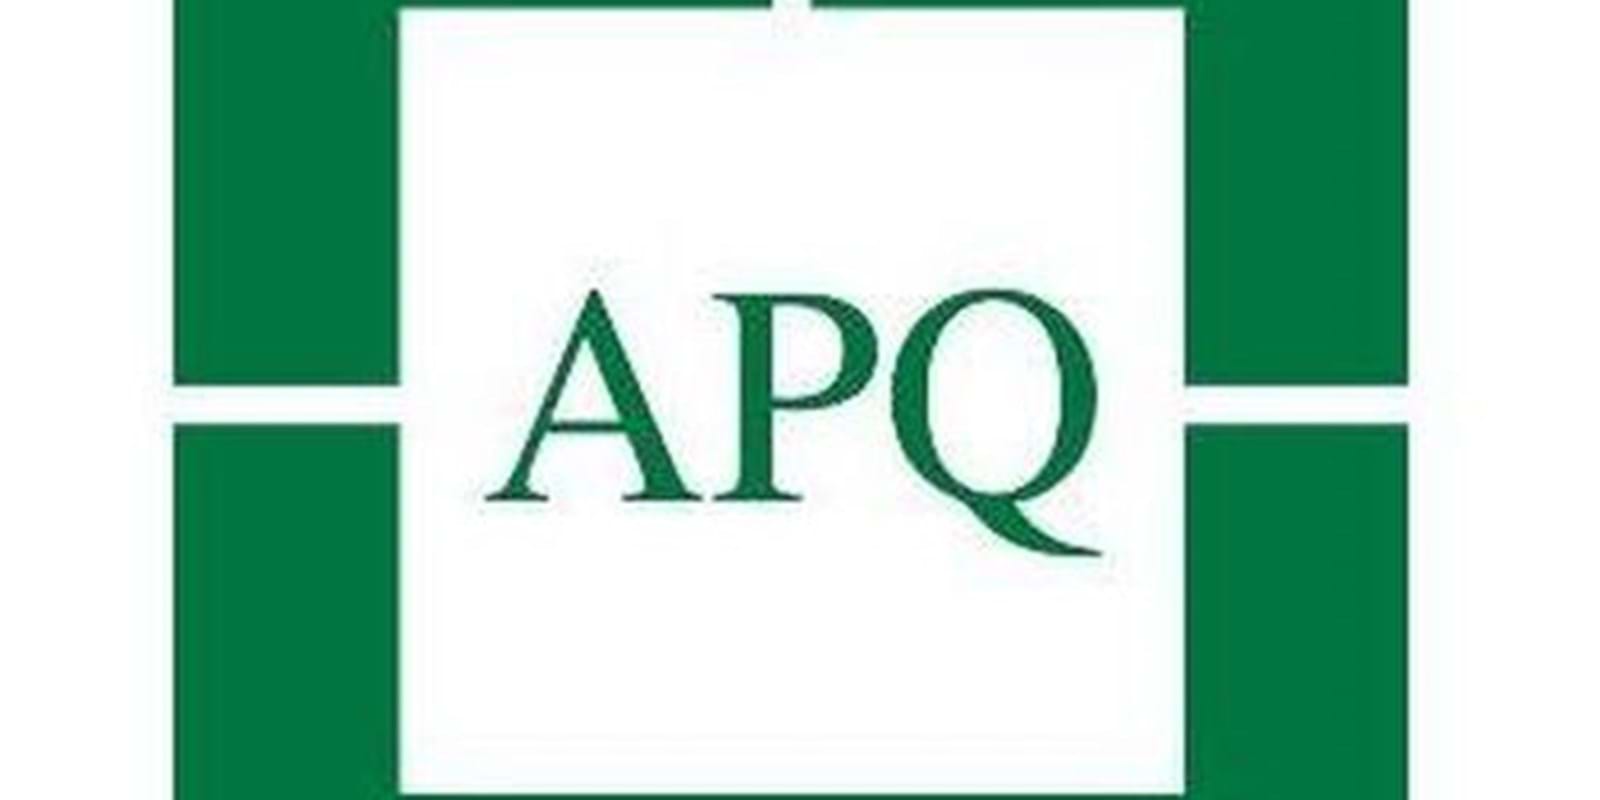 L'Association des Propriétaires du Québec (APQ) - Les propriétaires de logements ont des obligations à respecter et visent l'harmonie